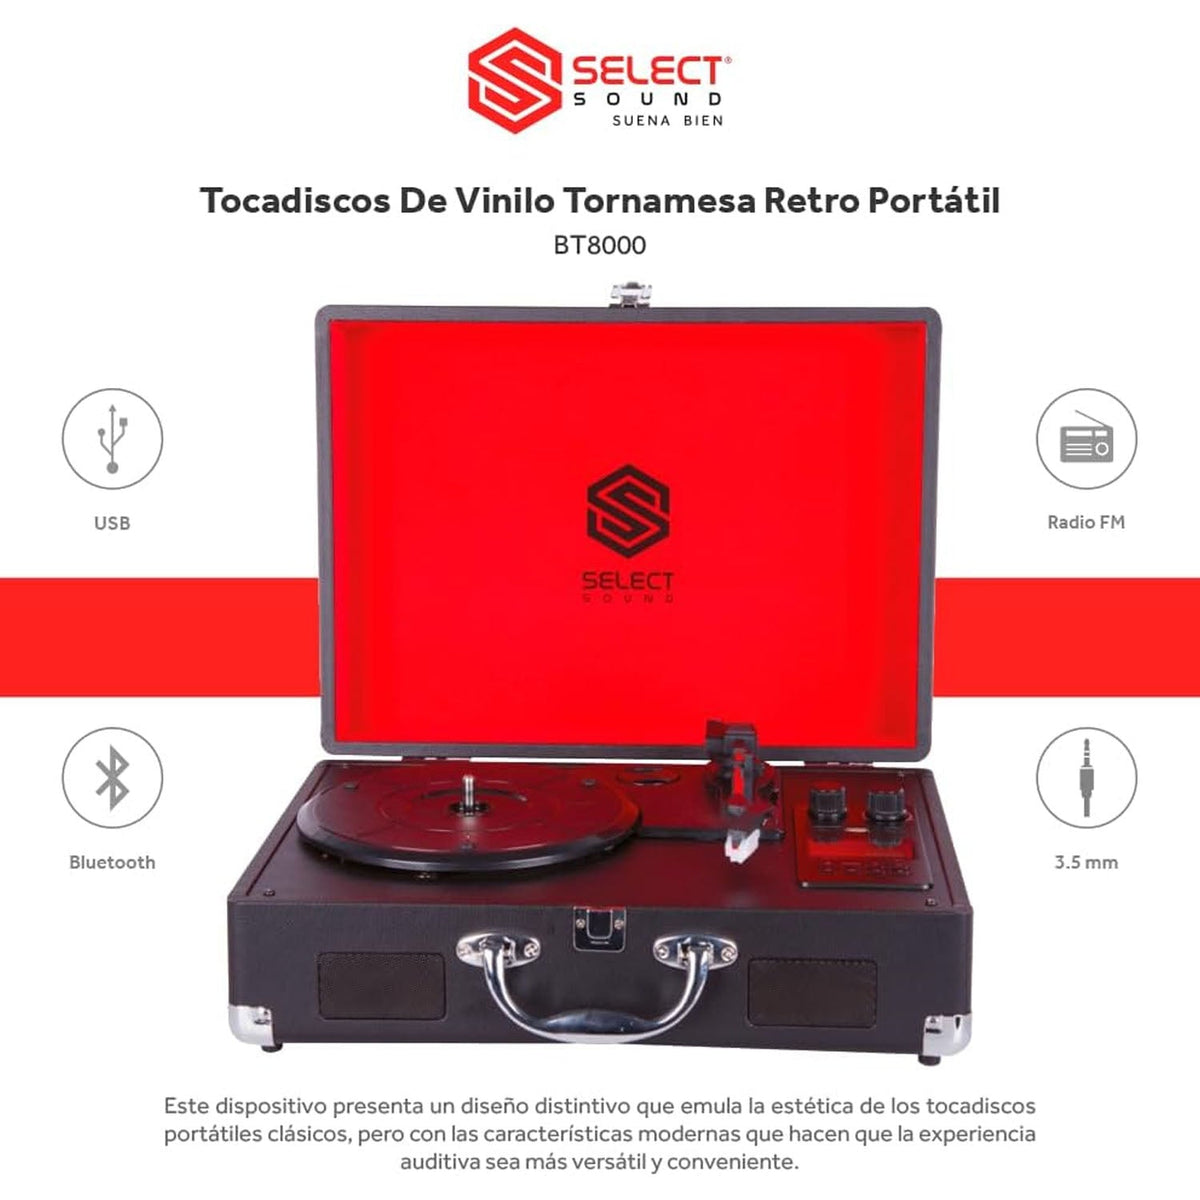 Select Sound BT8000 Tocadiscos de vinilo retro portátil 